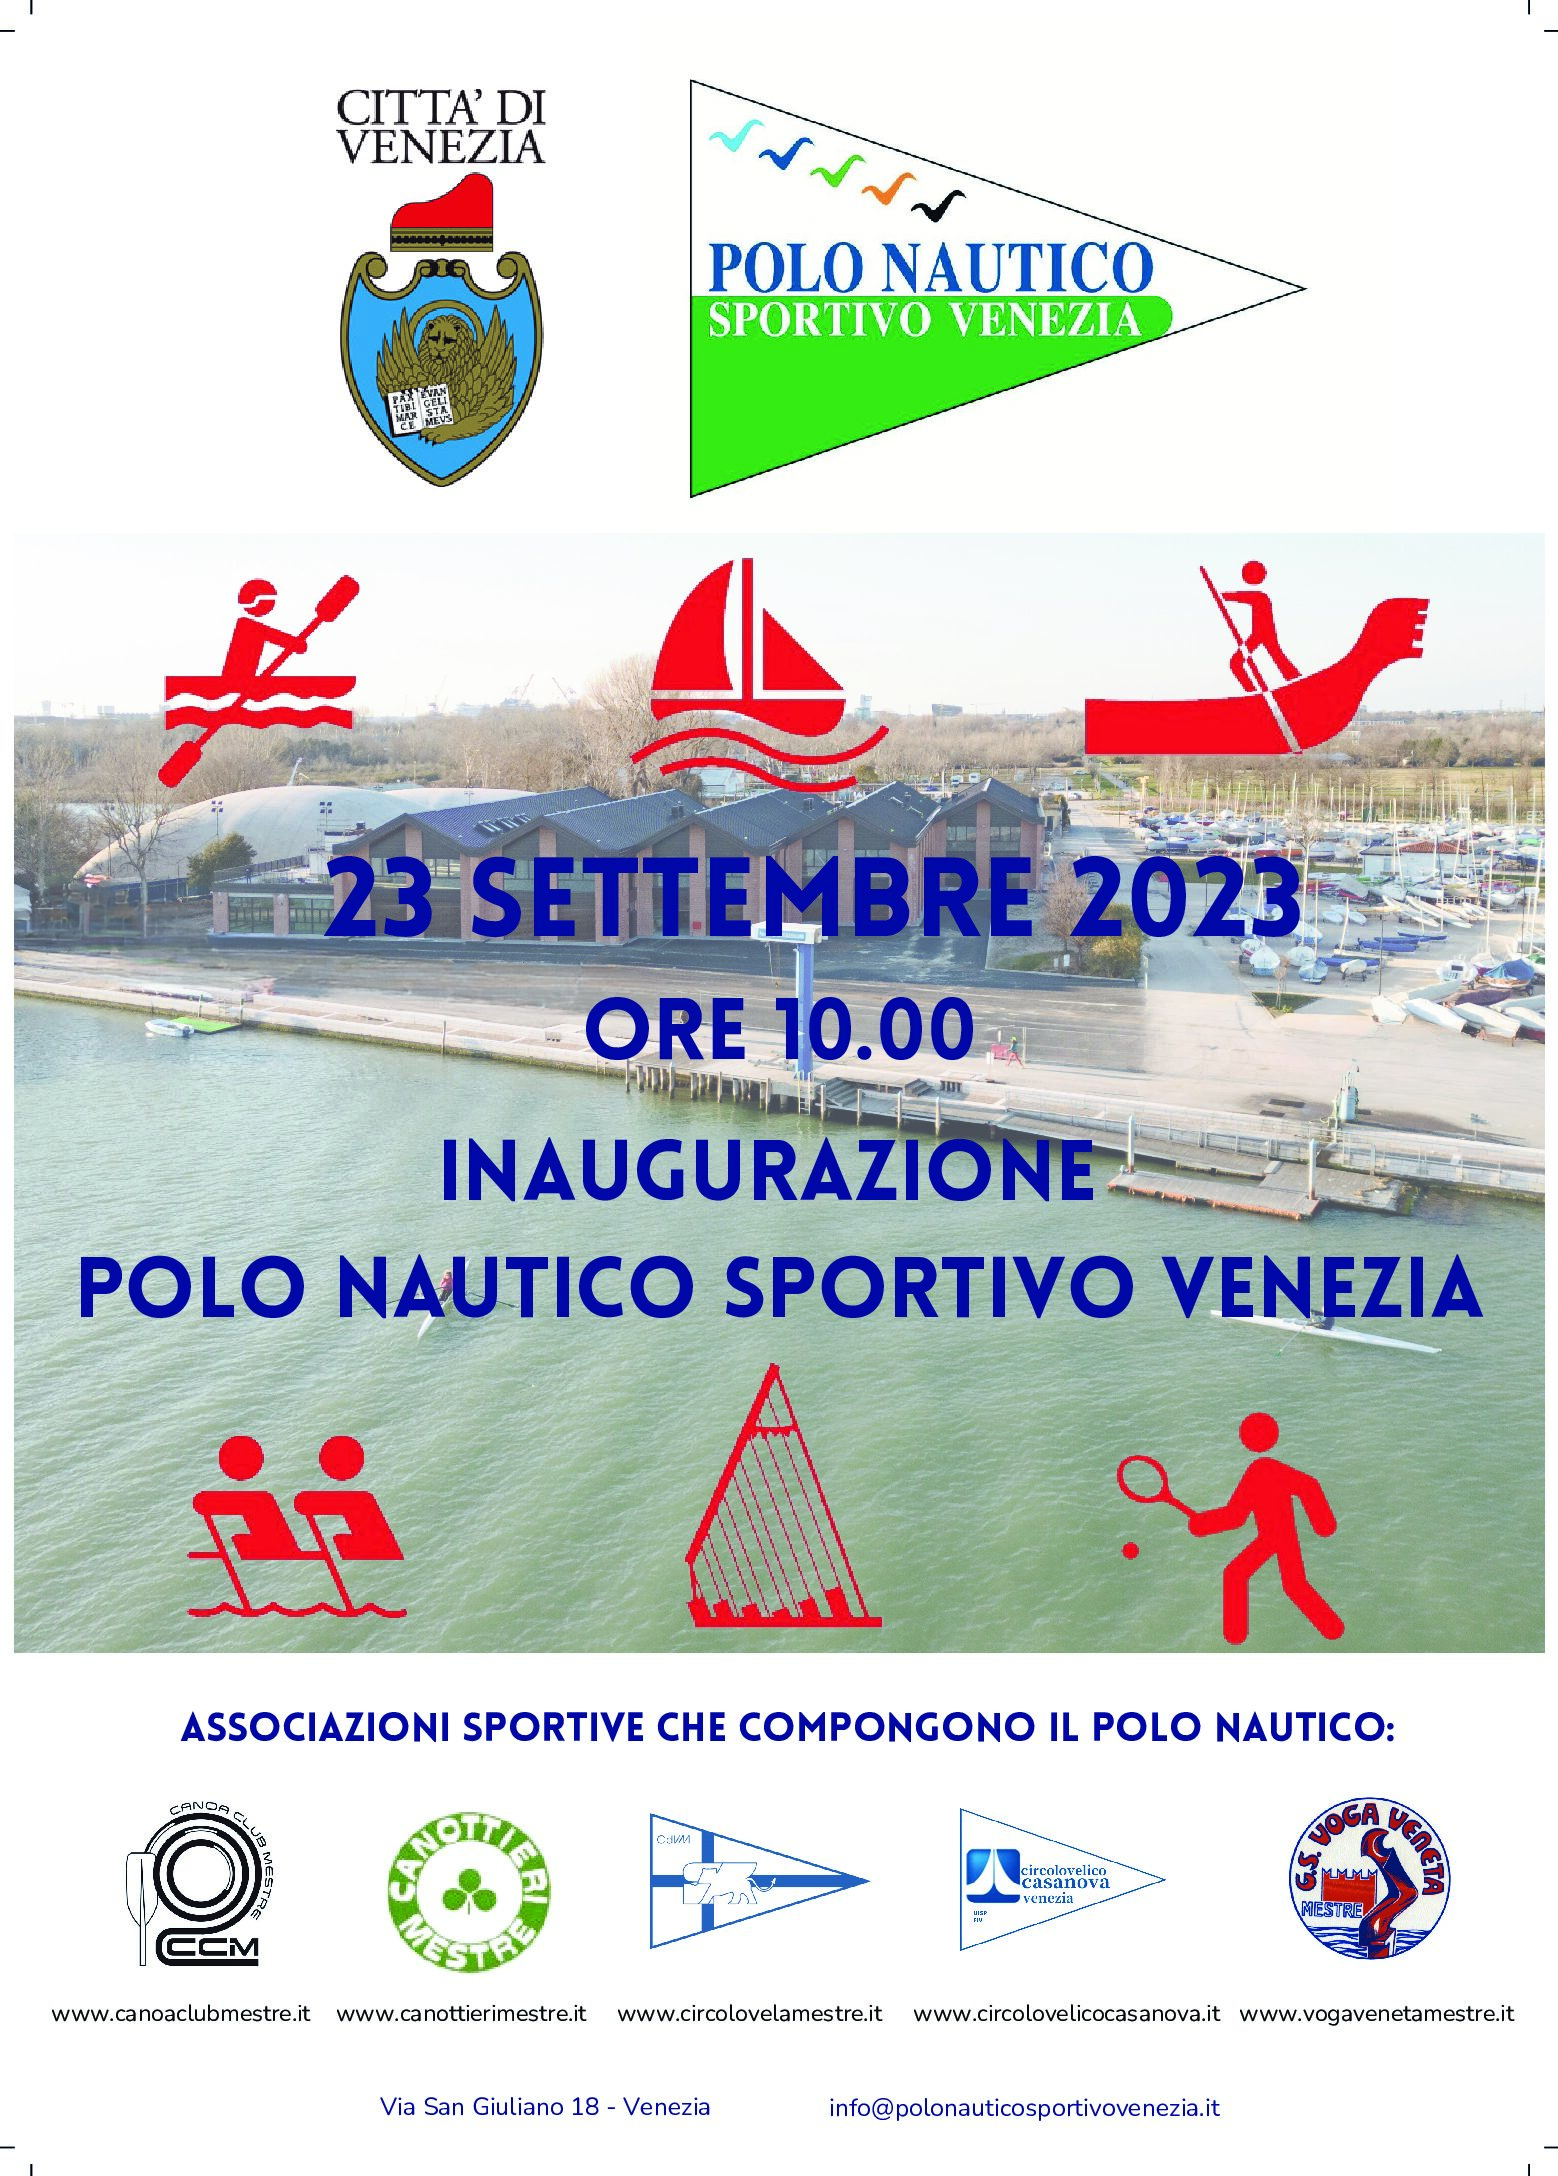 Inaugurazione Polo Nautico Sportivo Venezia